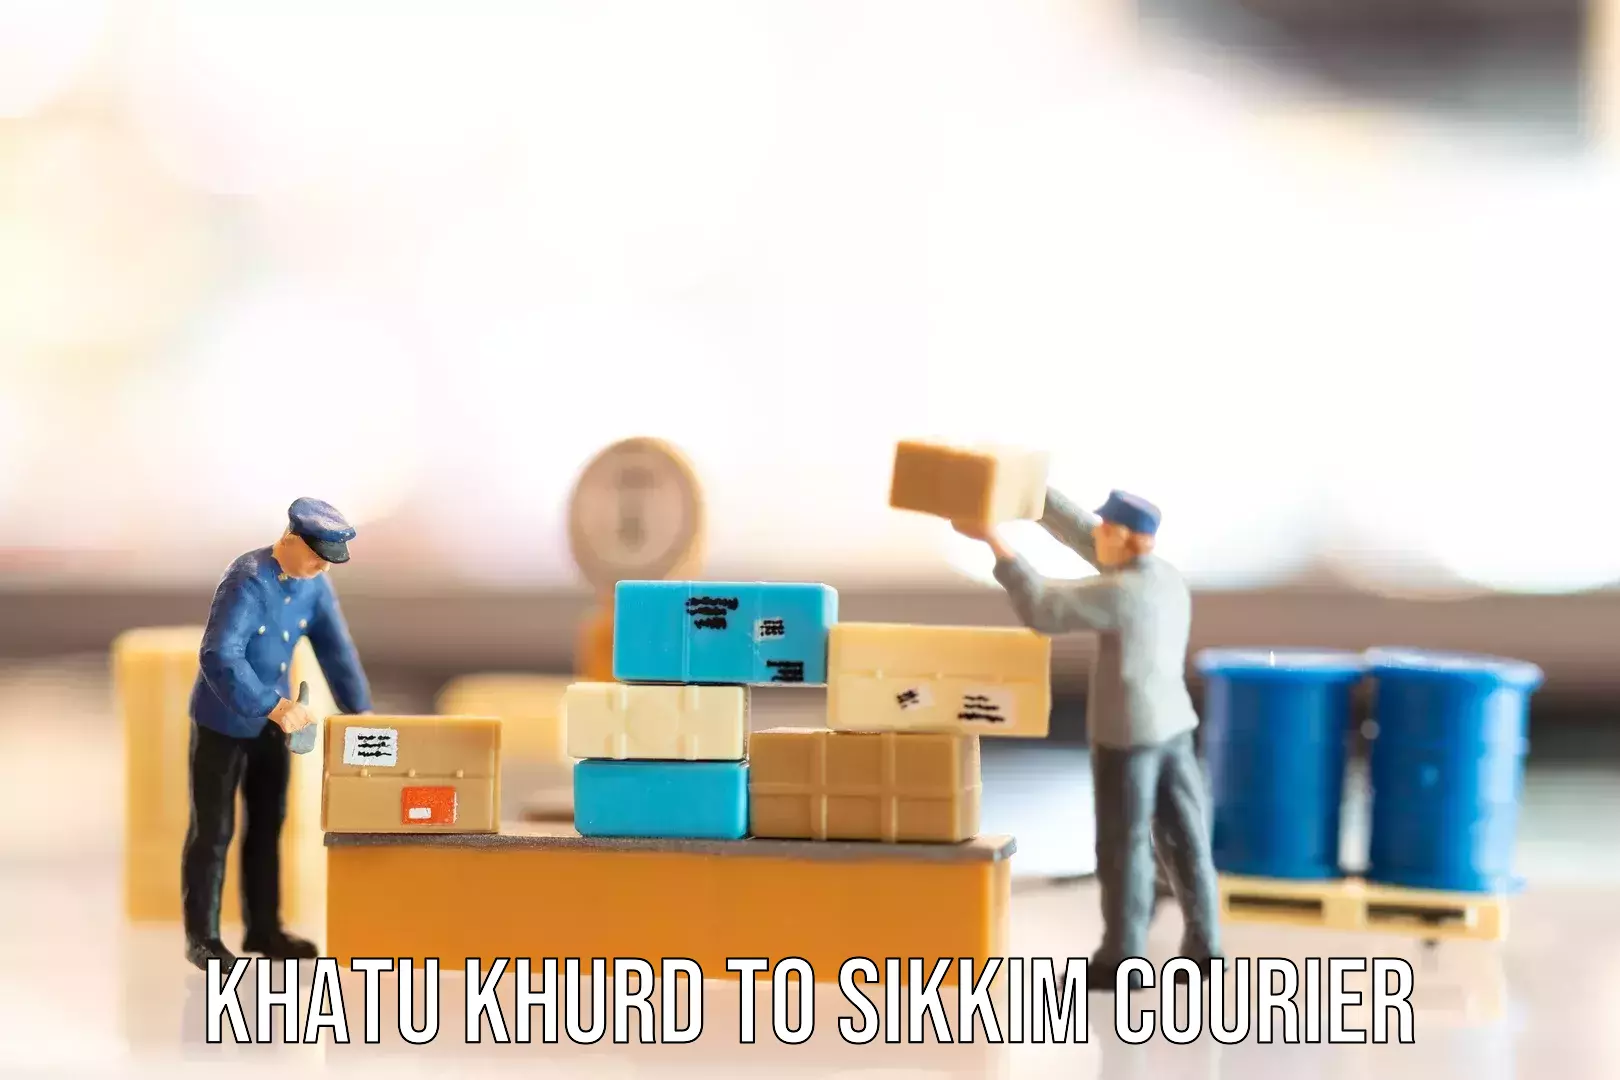 Personalized luggage shipping Khatu Khurd to Pelling